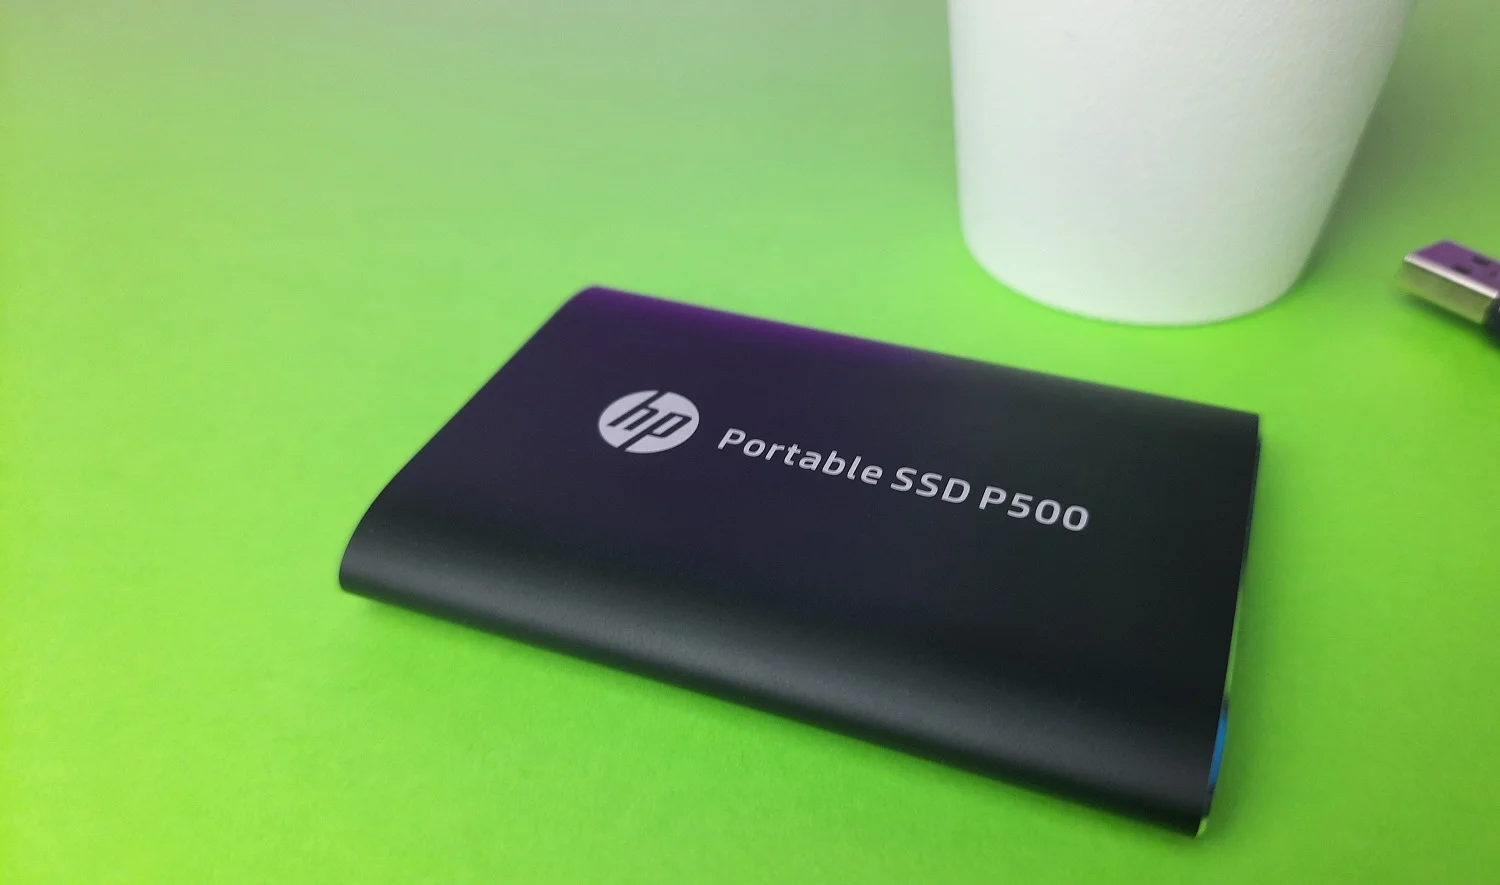 Обзор HP Portable SSD P500: как работает бюджетный карманный внешний SSD-диск - фото 3